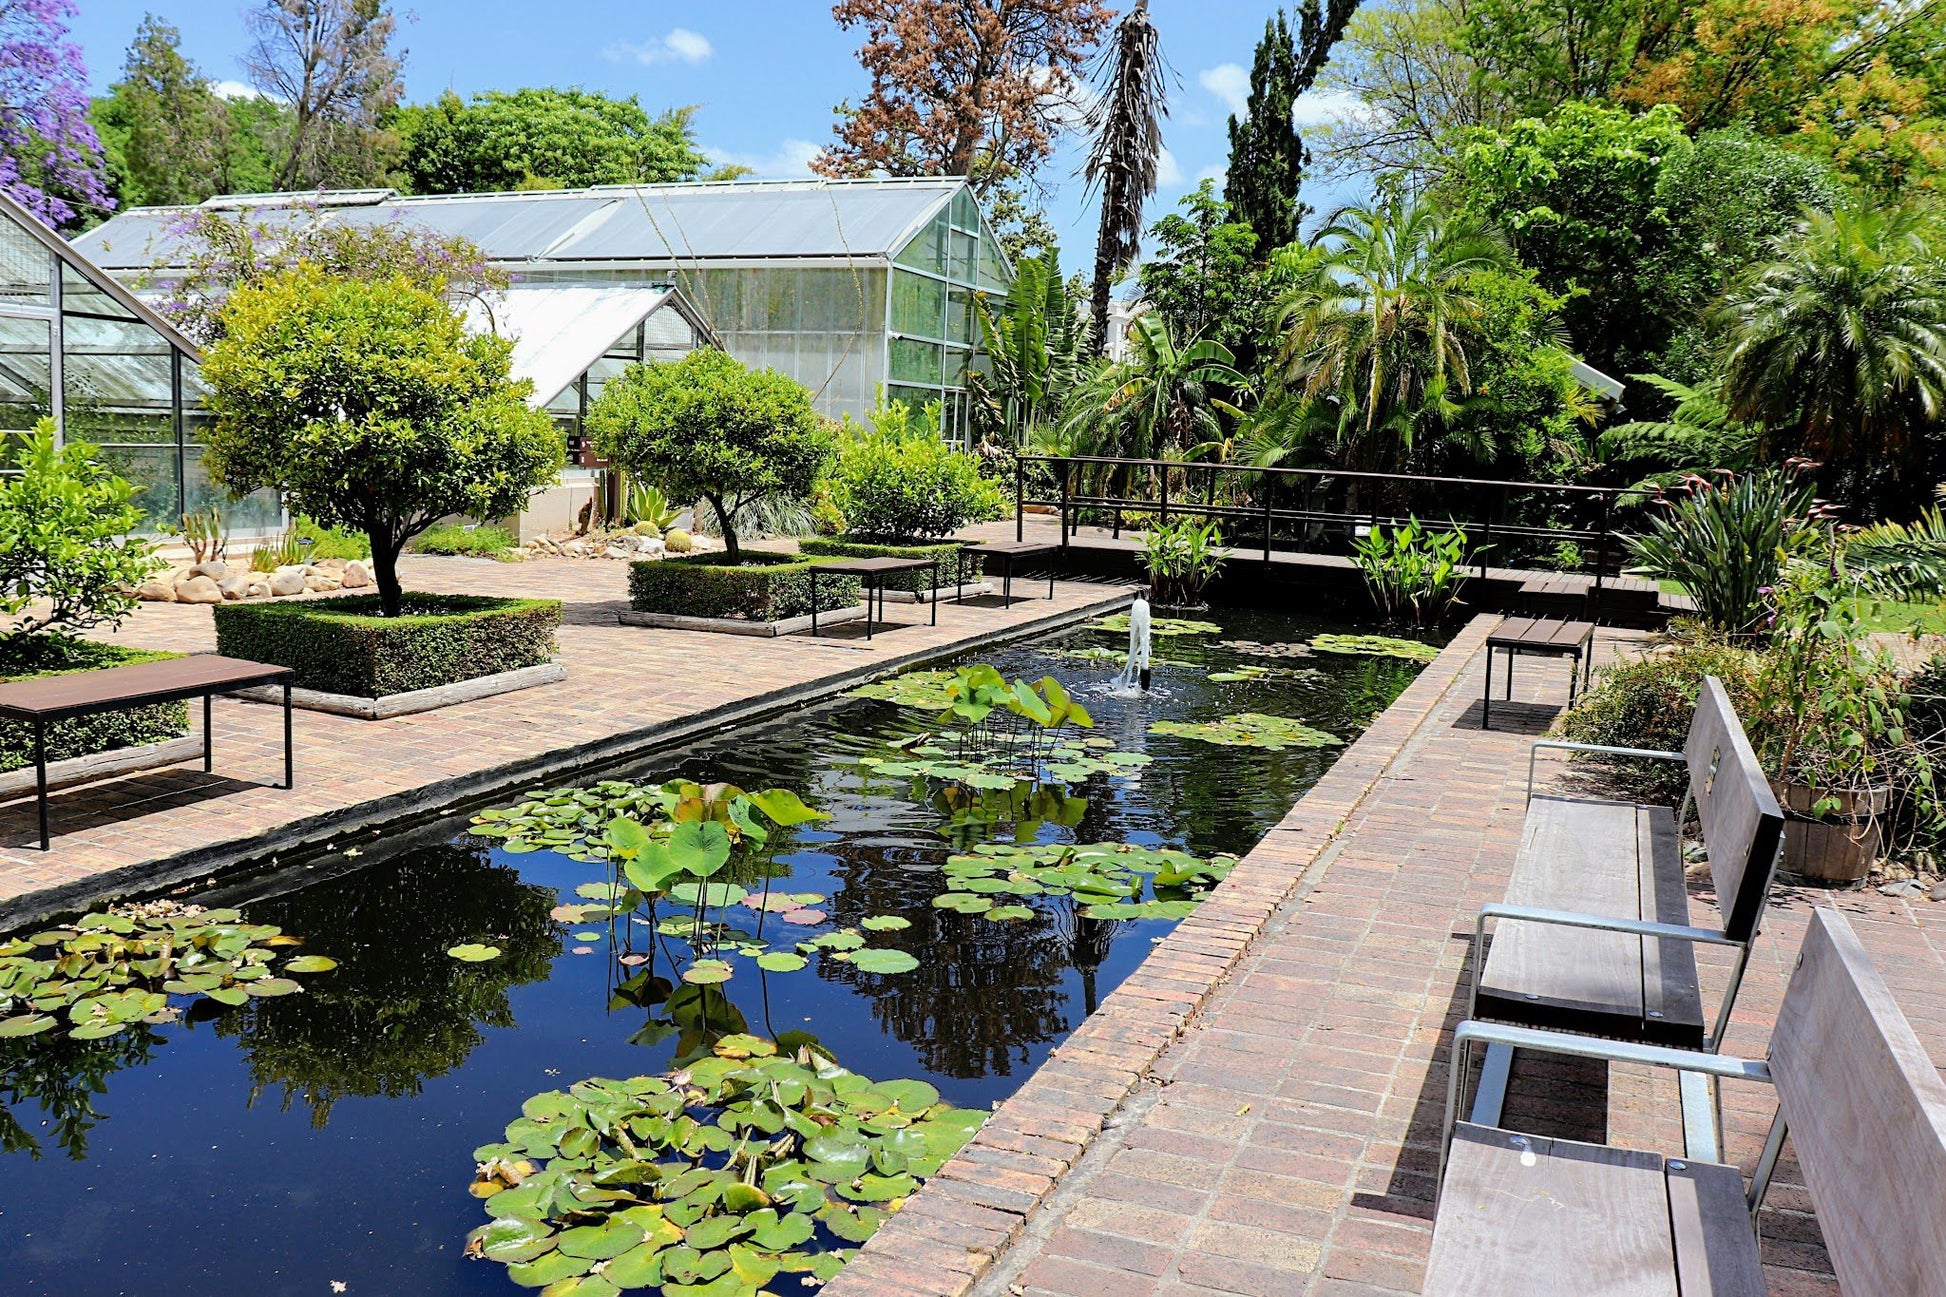  Stellenbosch University Botanical Garden